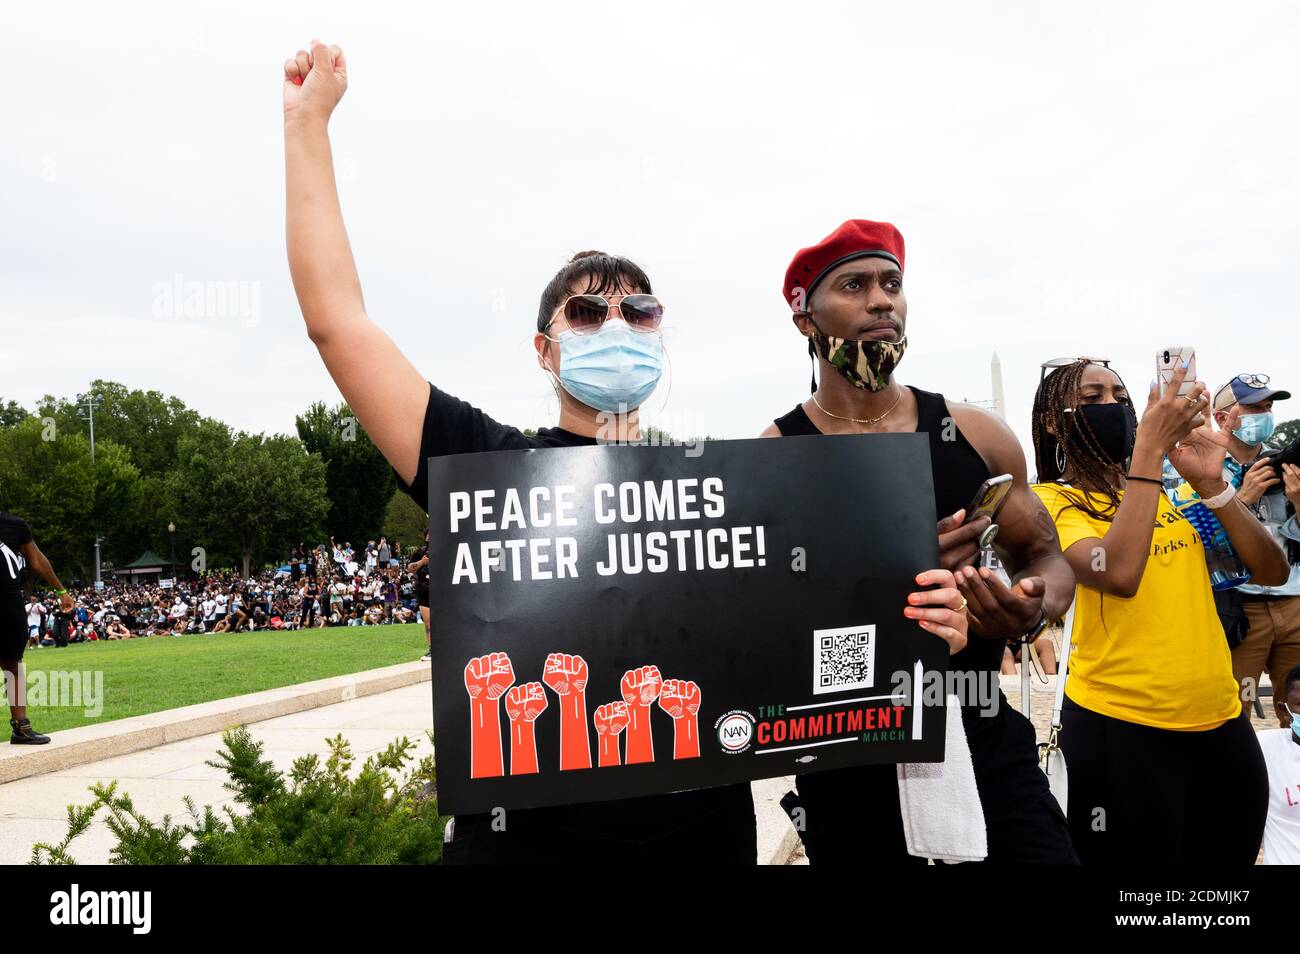 Eine Frau hält ein Plakat, auf dem steht, dass Frieden nach Gerechtigkeit kommt, während des National Action Network (NAN) Commitment March am Lincoln Memorial auf der National Mall. Stockfoto